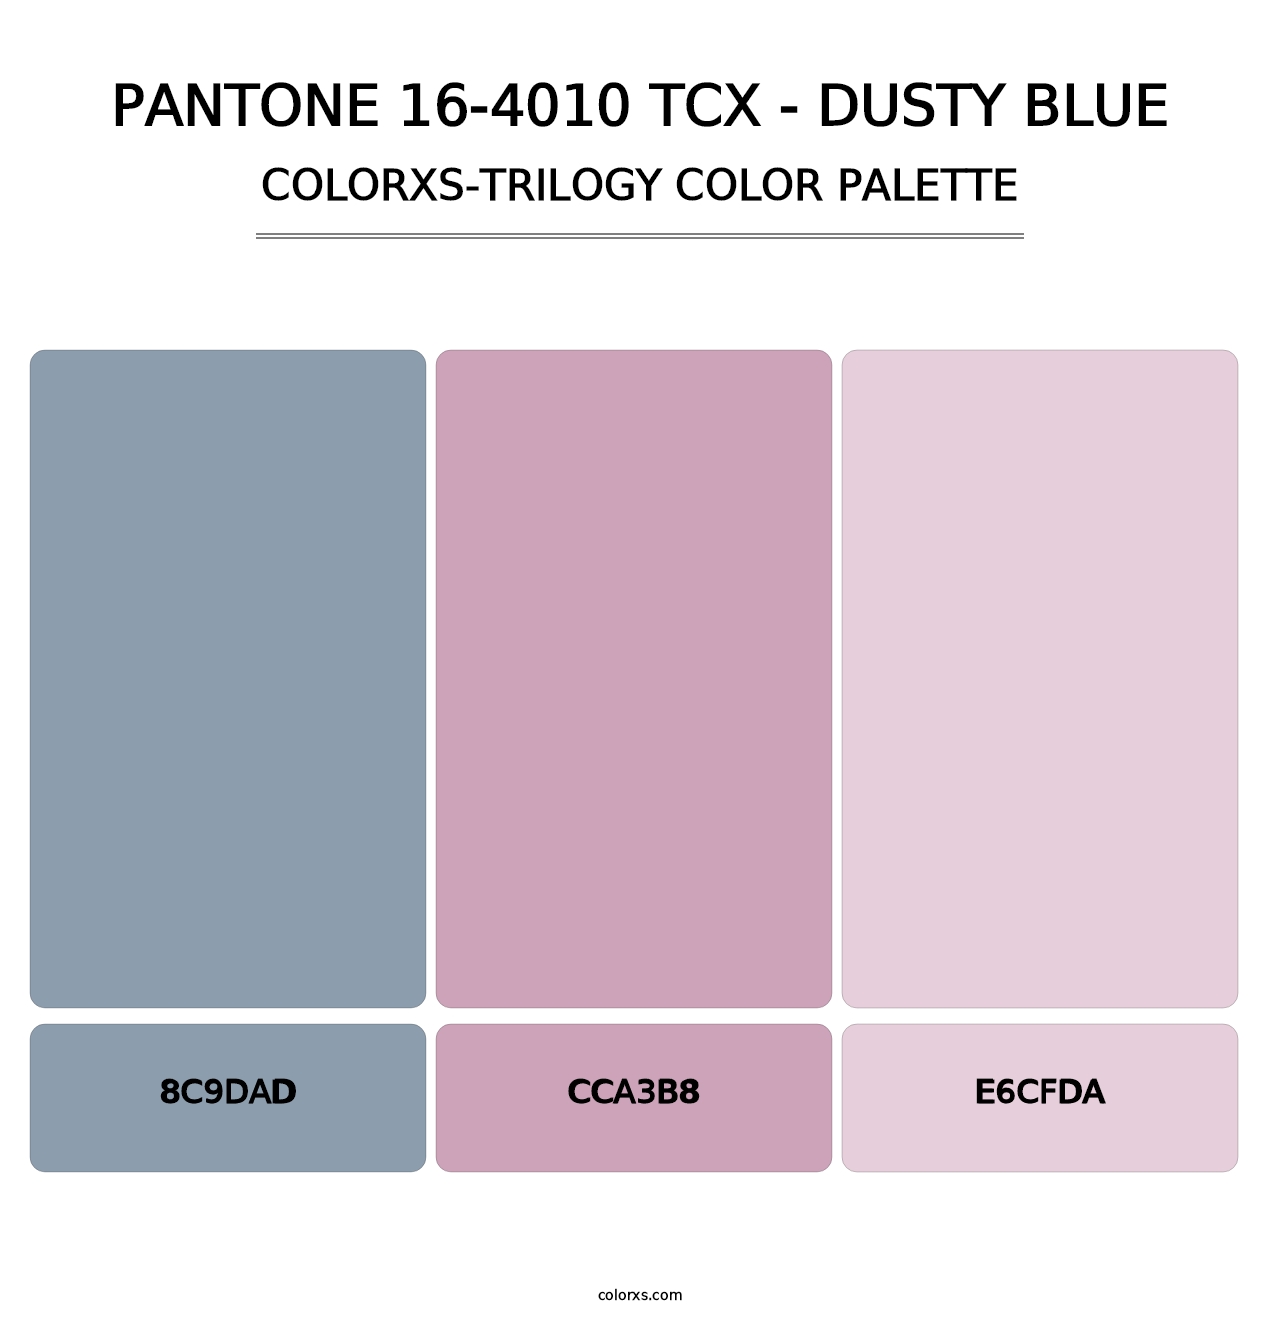 PANTONE 16-4010 TCX - Dusty Blue - Colorxs Trilogy Palette